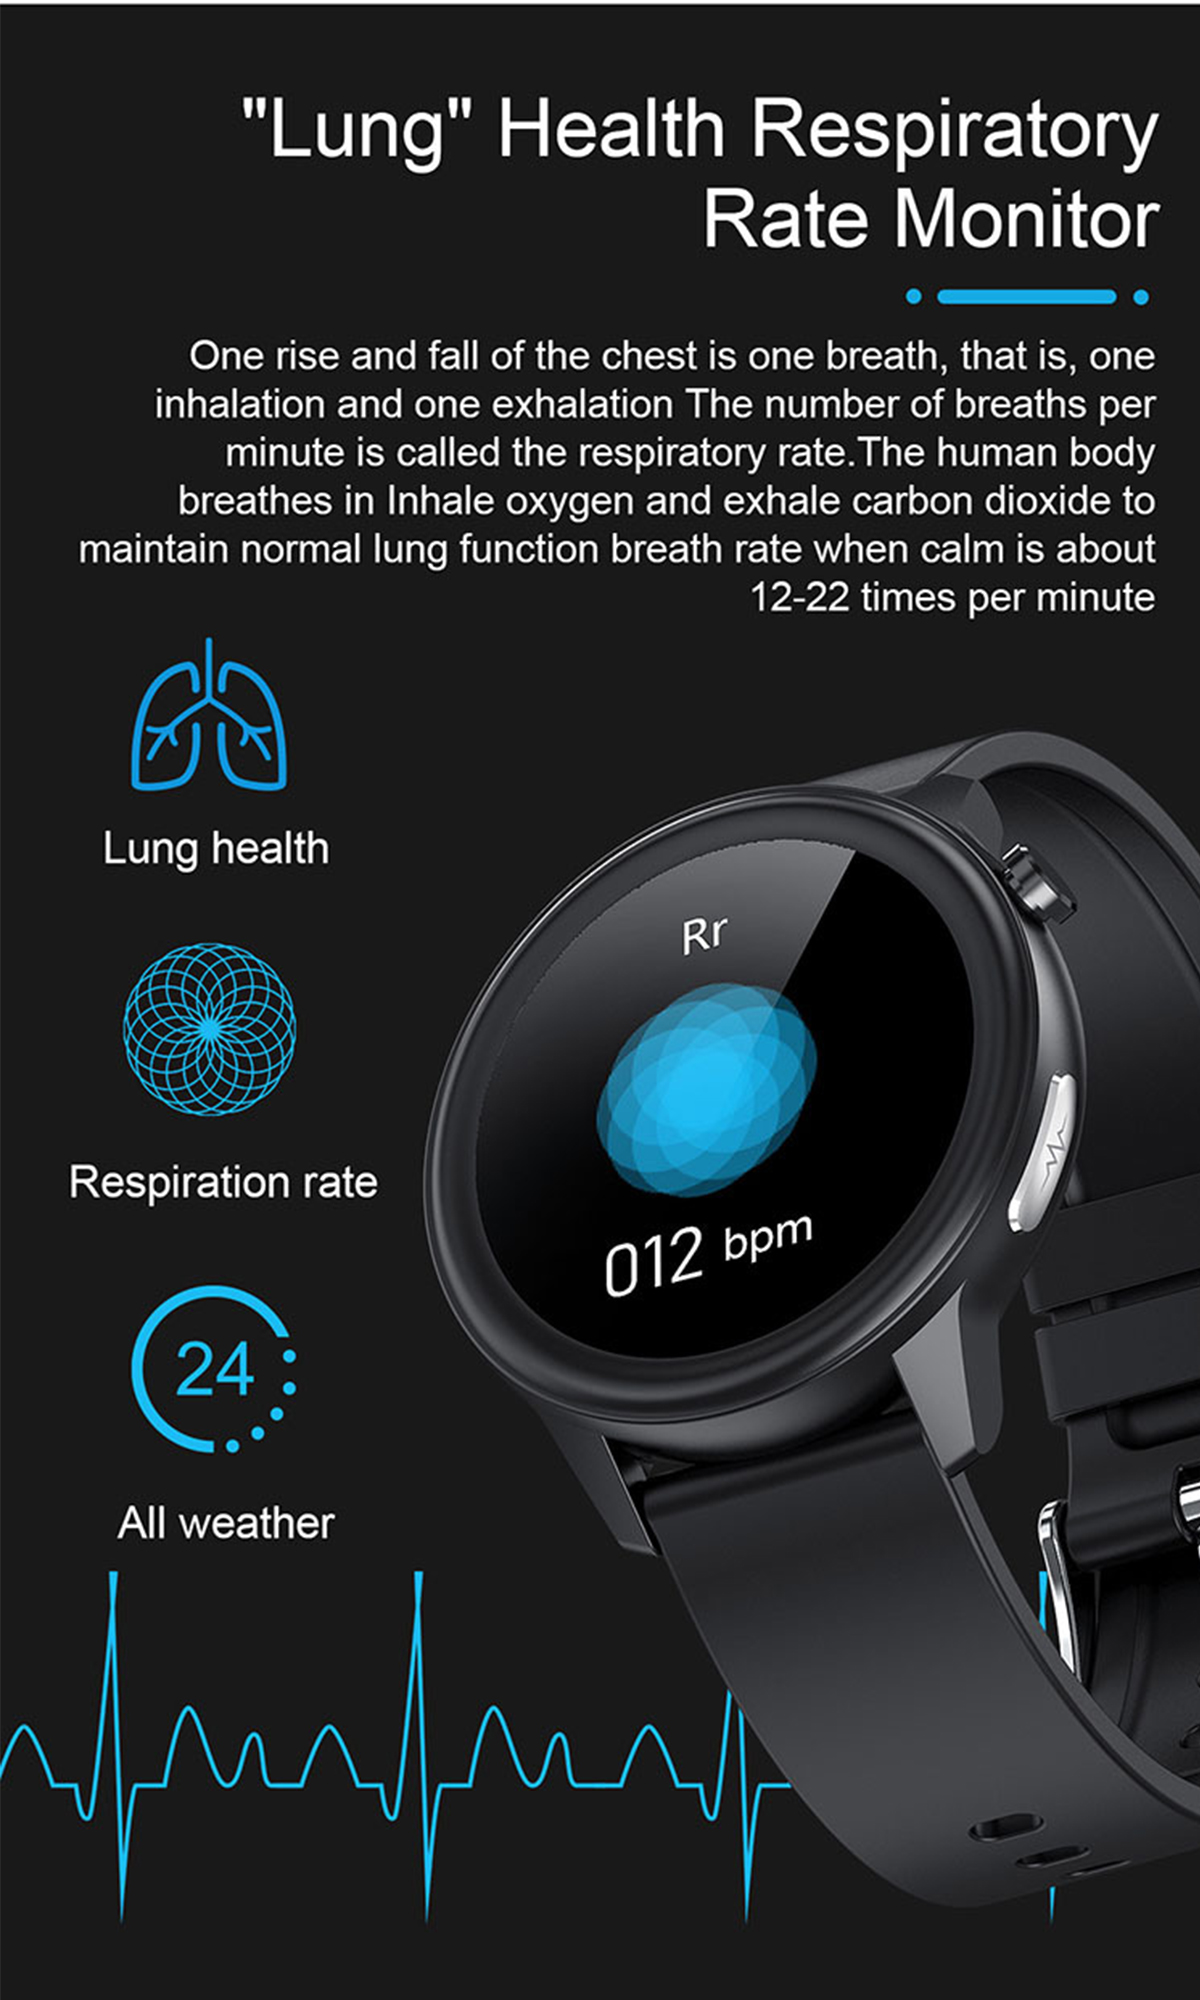 Rot Silikon, Herzfrequenzüberwachung Fitness Akkulaufzeit Trainingsmodi - Tage BRIGHTAKE mit - Smartwatch Smartwatch 14